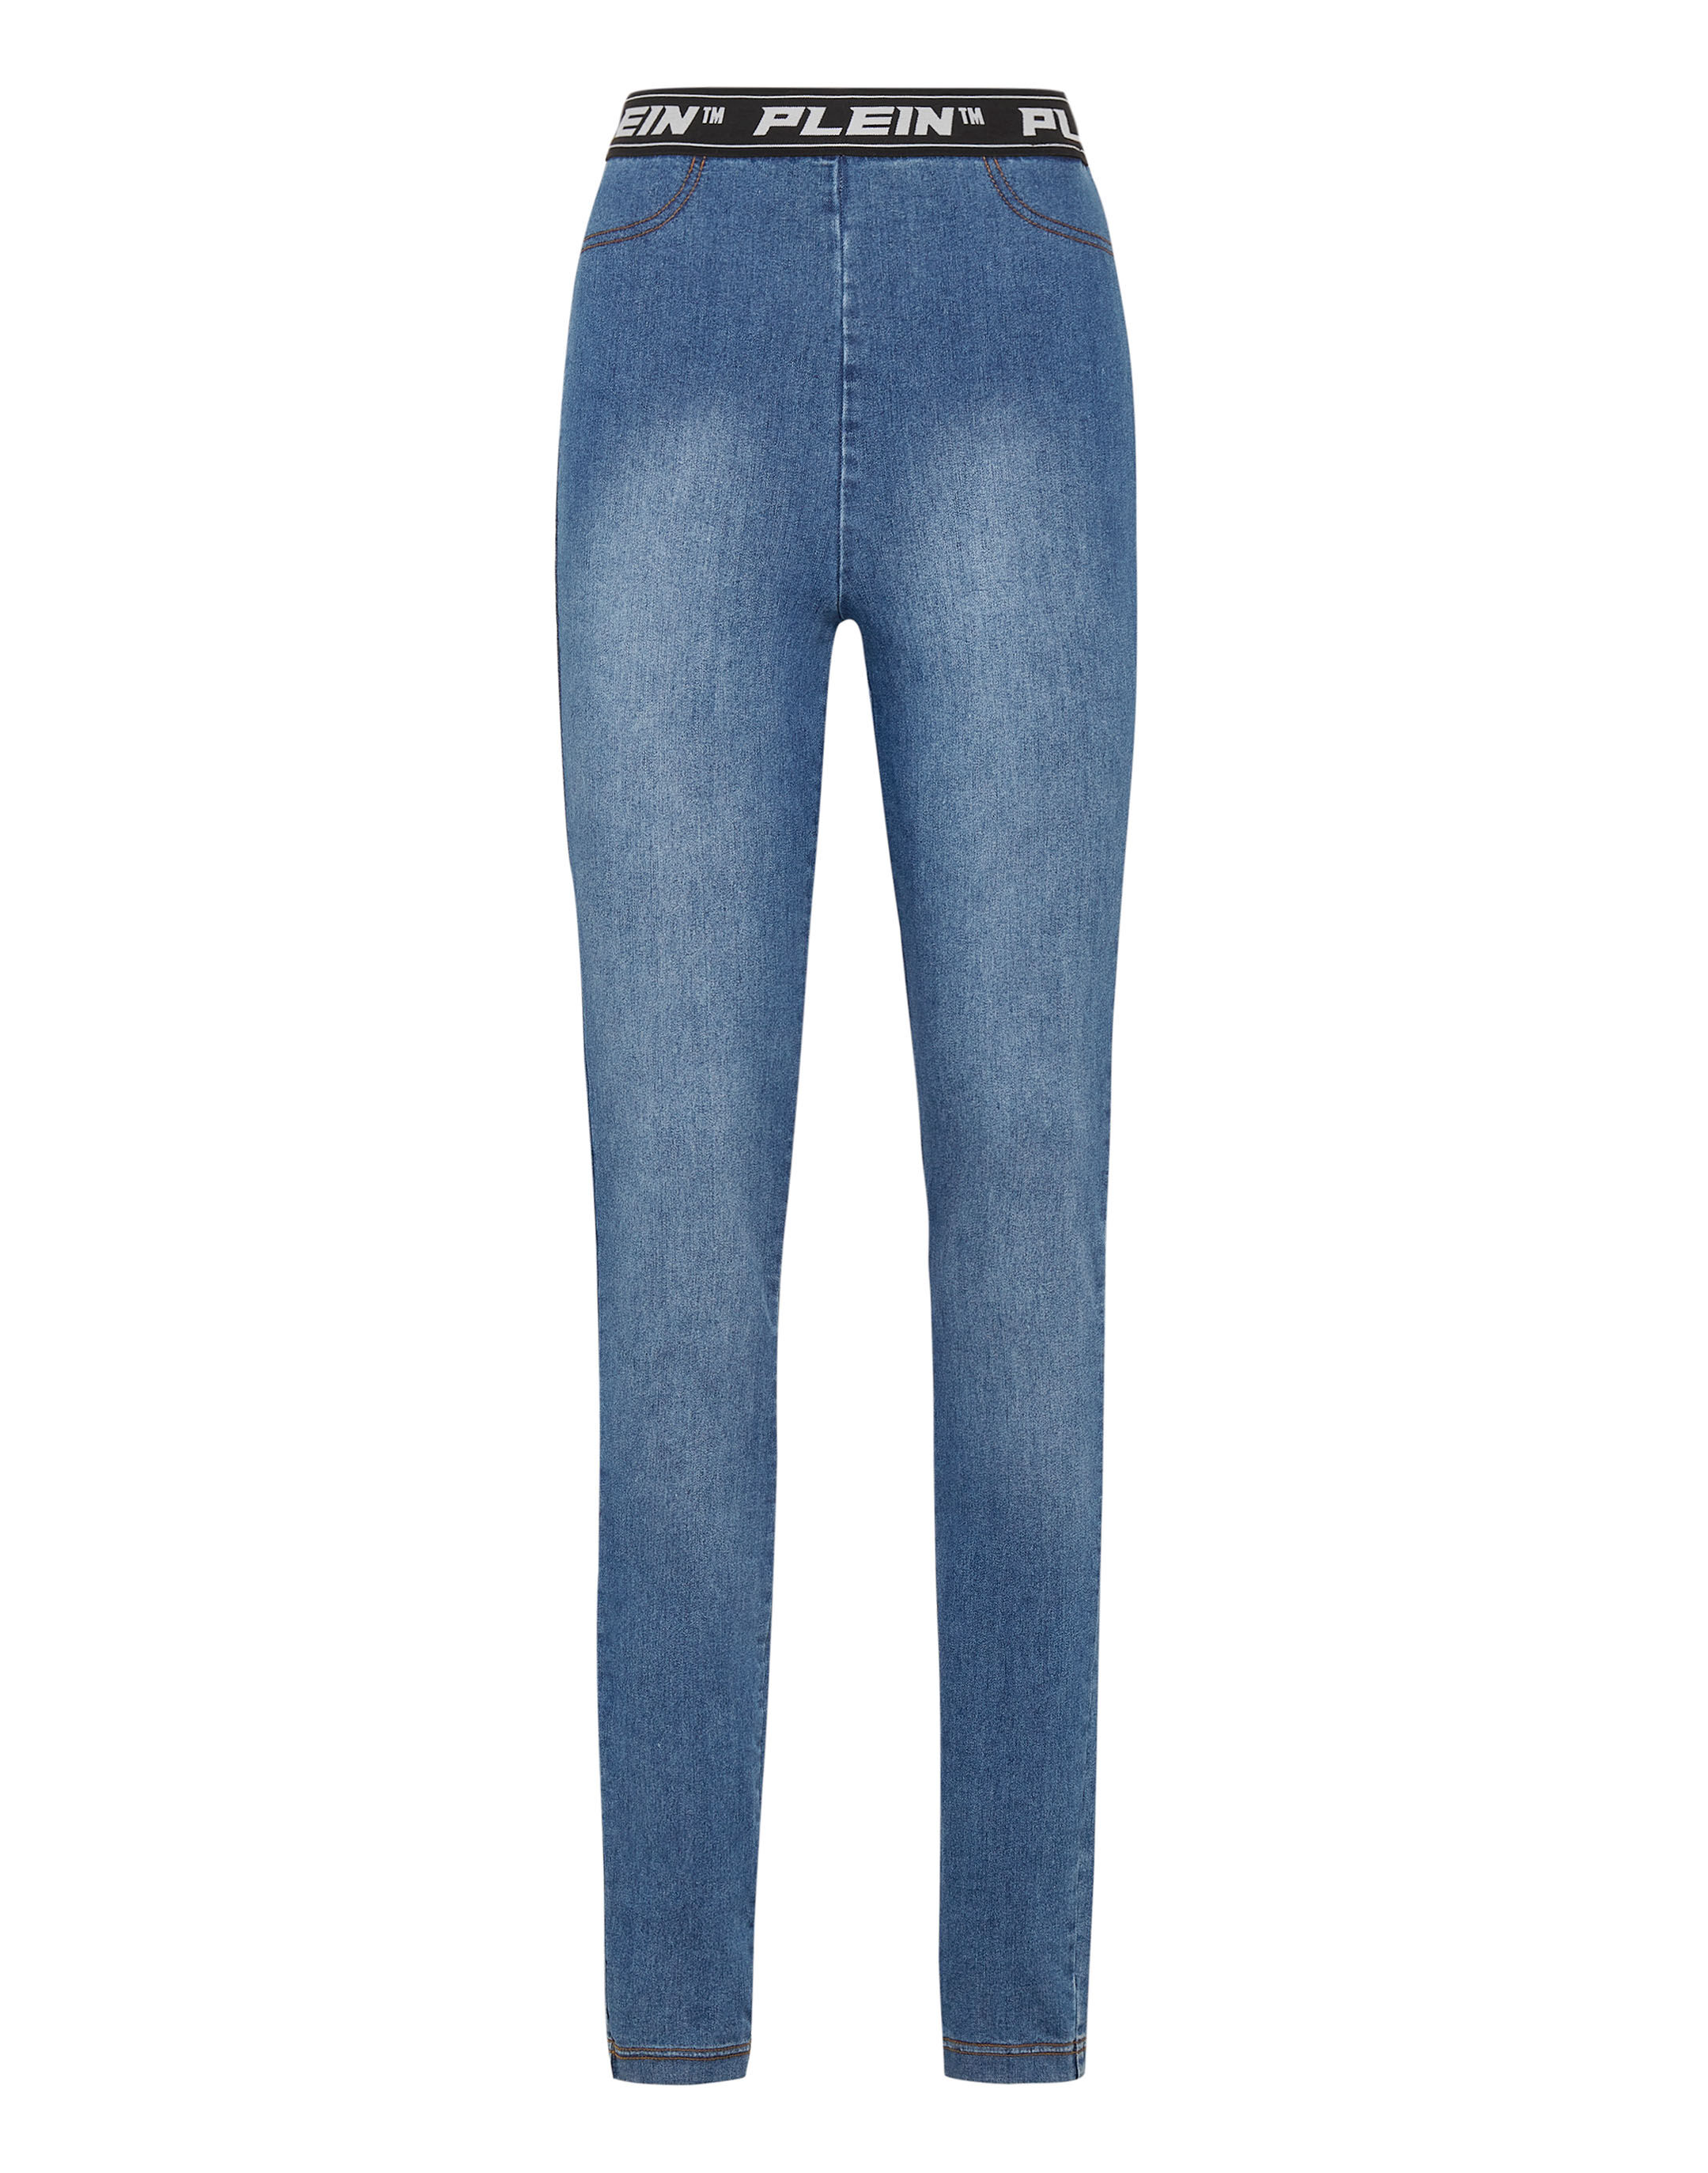 Philipp Plein Denim Andere materialien jeans in Blau Damen Bekleidung Jeans Röhrenjeans 